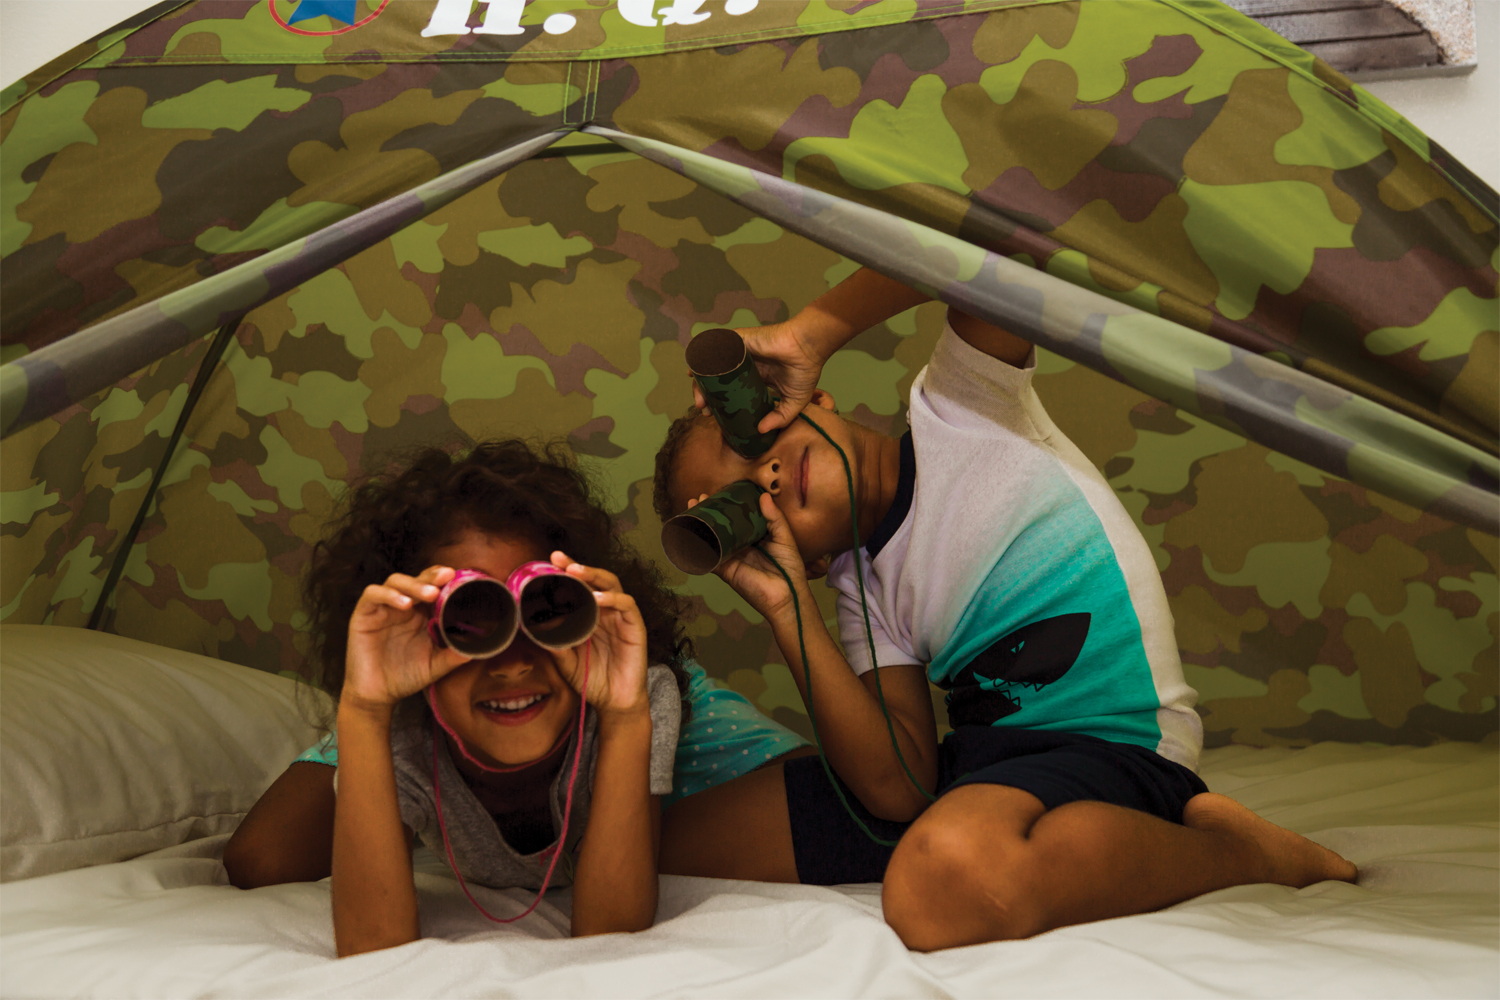 DIY Camo Binoculars and Summer Sleepover Fun!